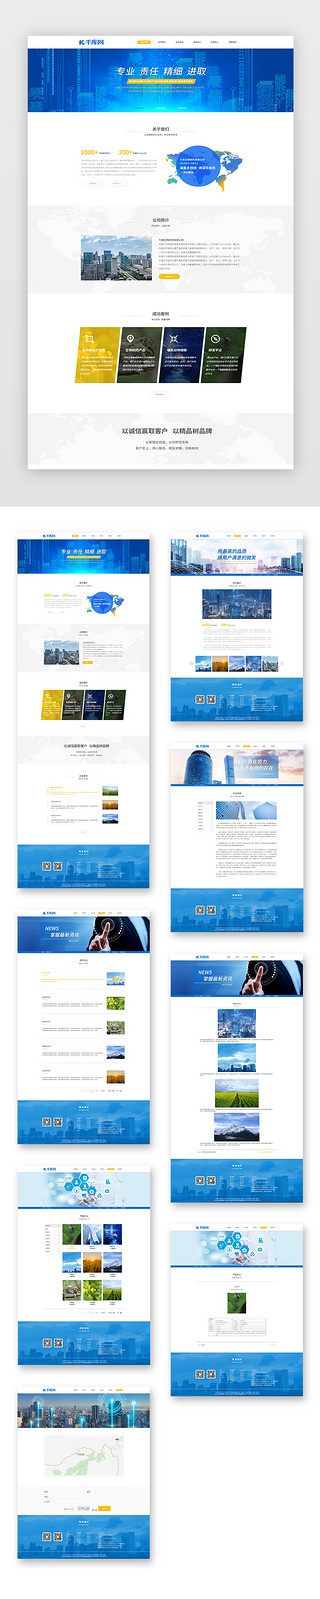 文献研究法UI设计素材_蓝色通用简约生物药物研究企业网站套图